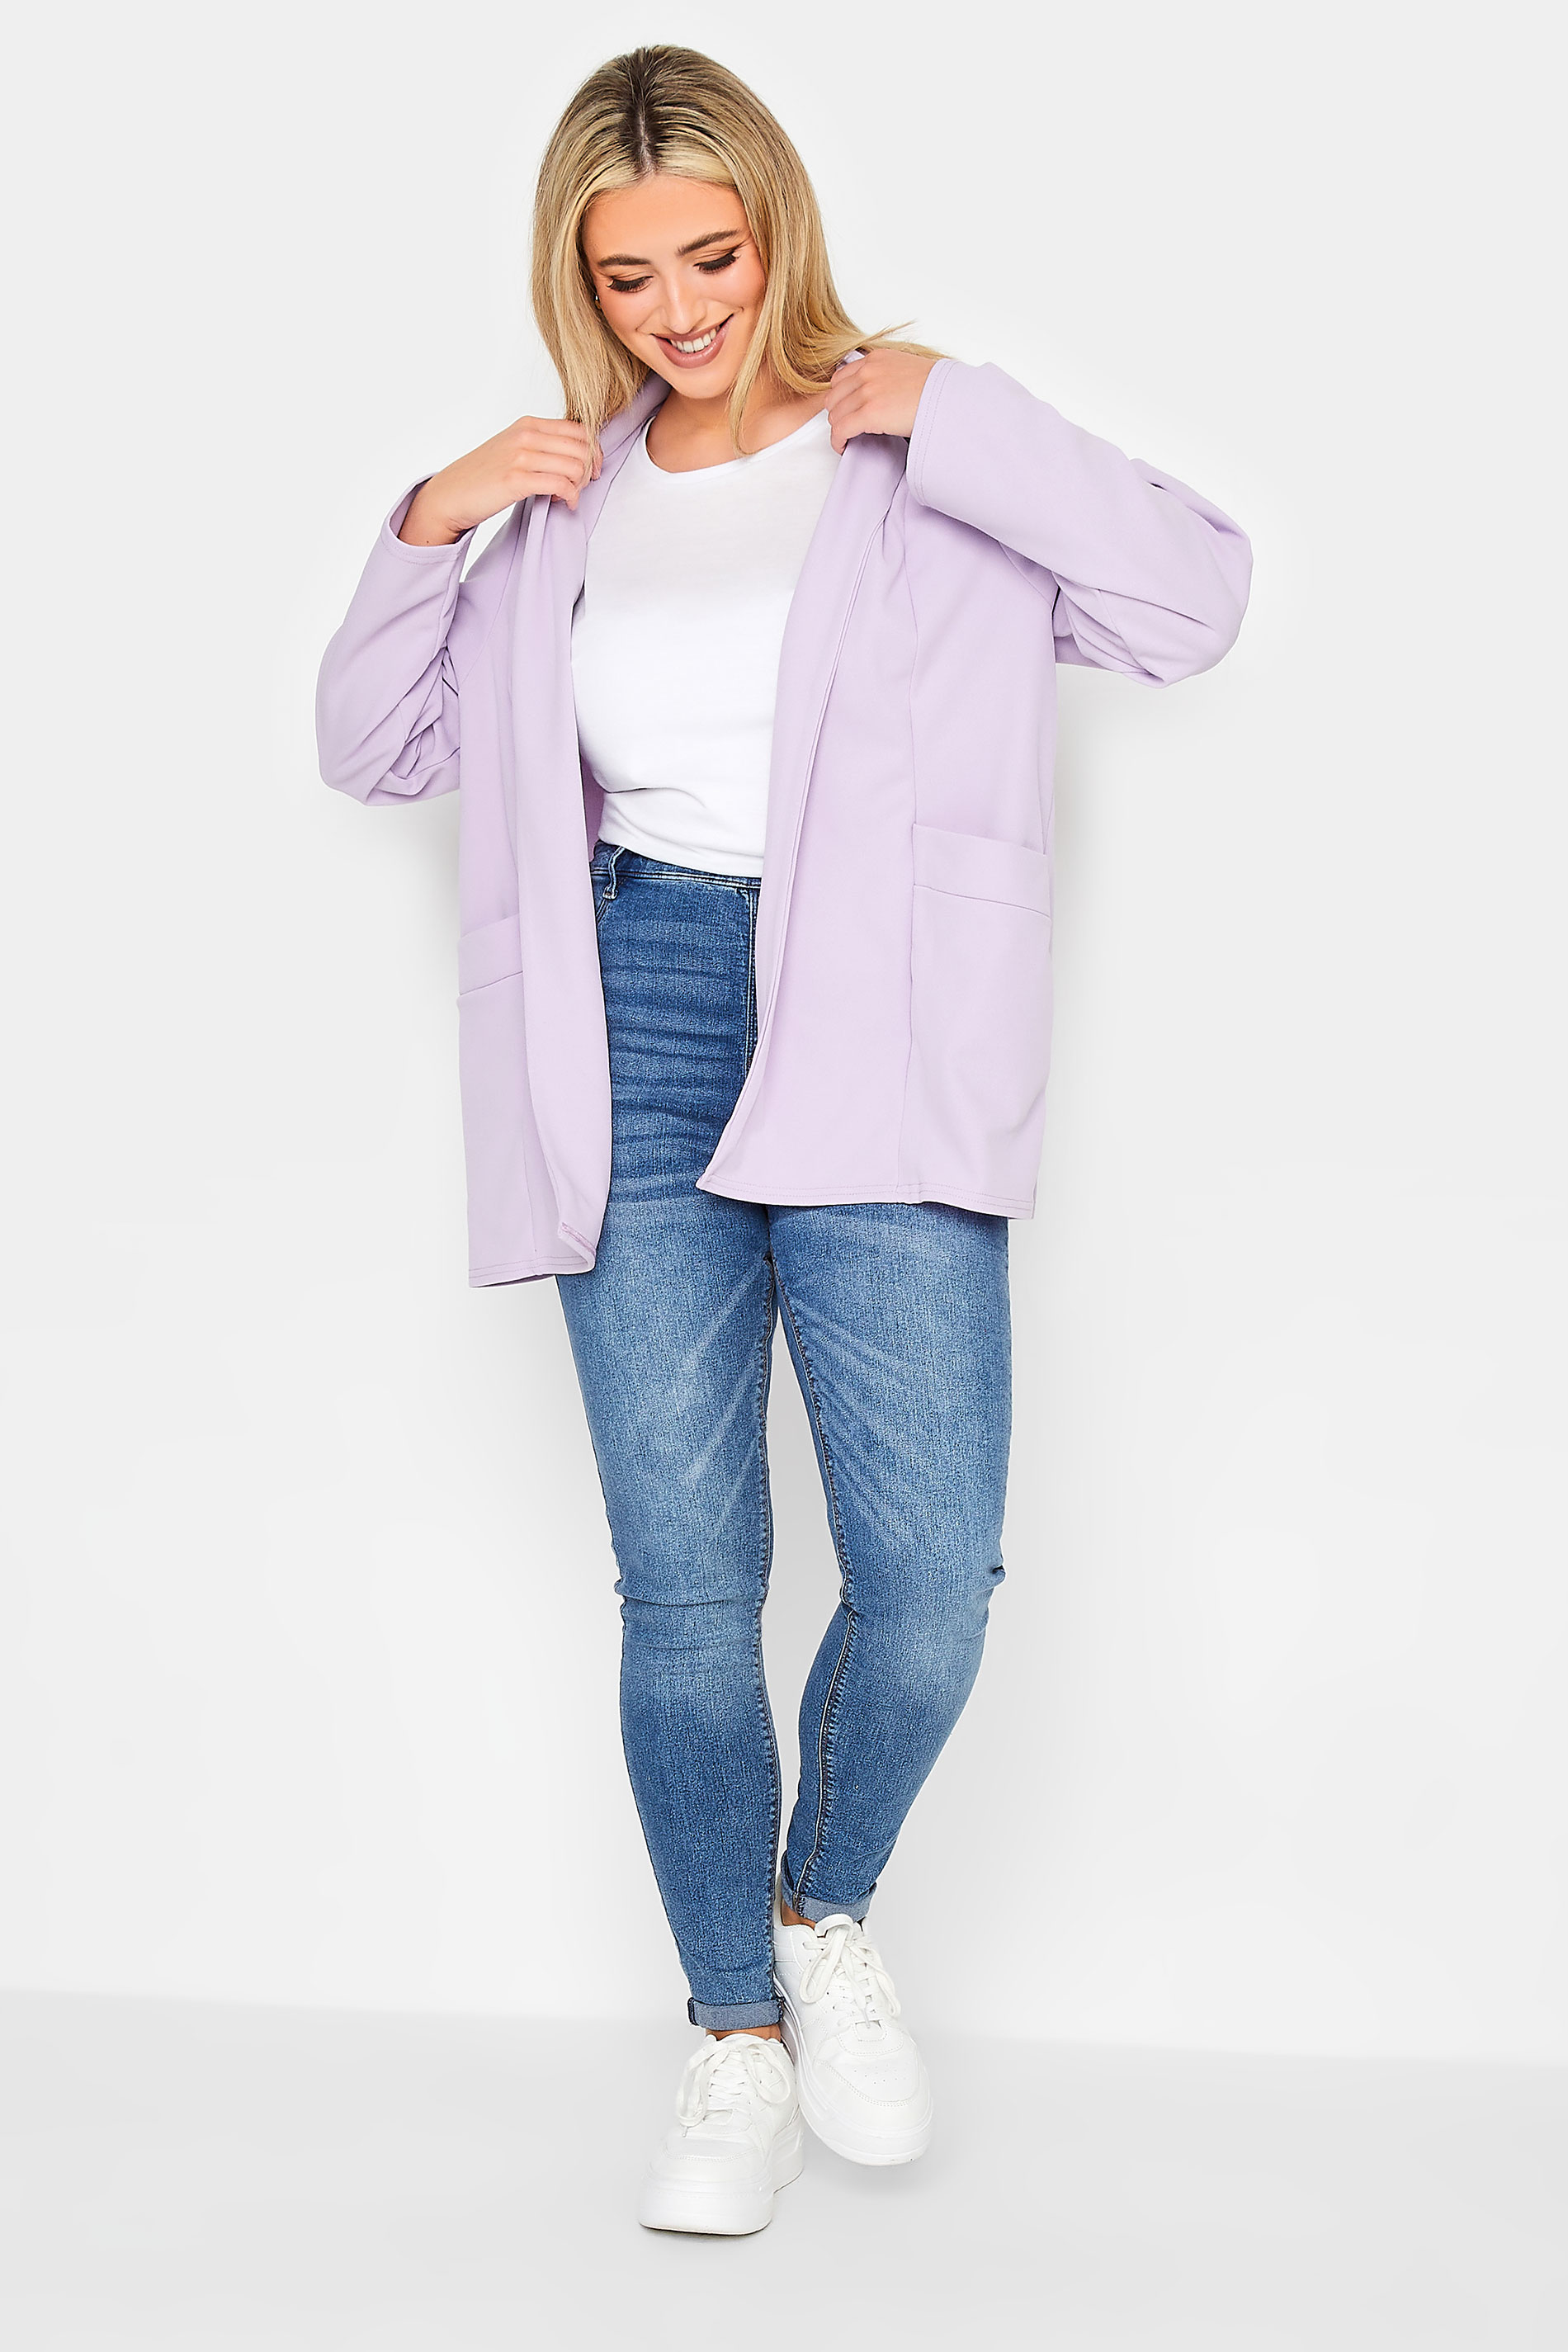 YOURS PETITE Plus Size Lilac Purple Scuba Blazer | Yours Clothing 2